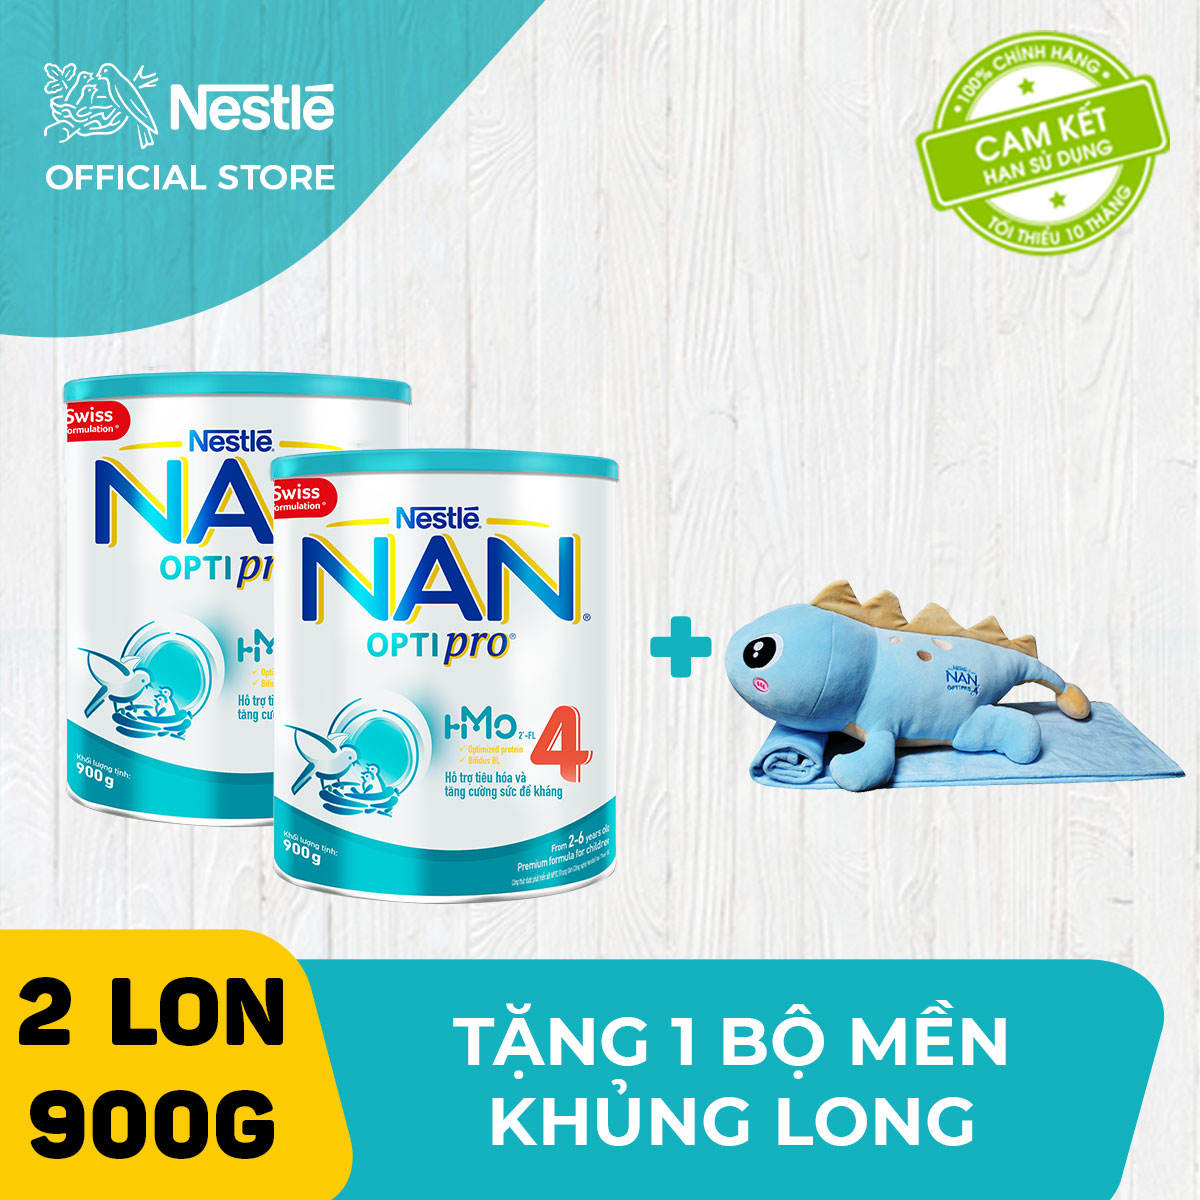 Bộ 2 lon sữa bột Nestle NAN Optipro 4 cho trẻ trên 2 tuổi 900g + Tặng 1 bộ mền khủng long nằm